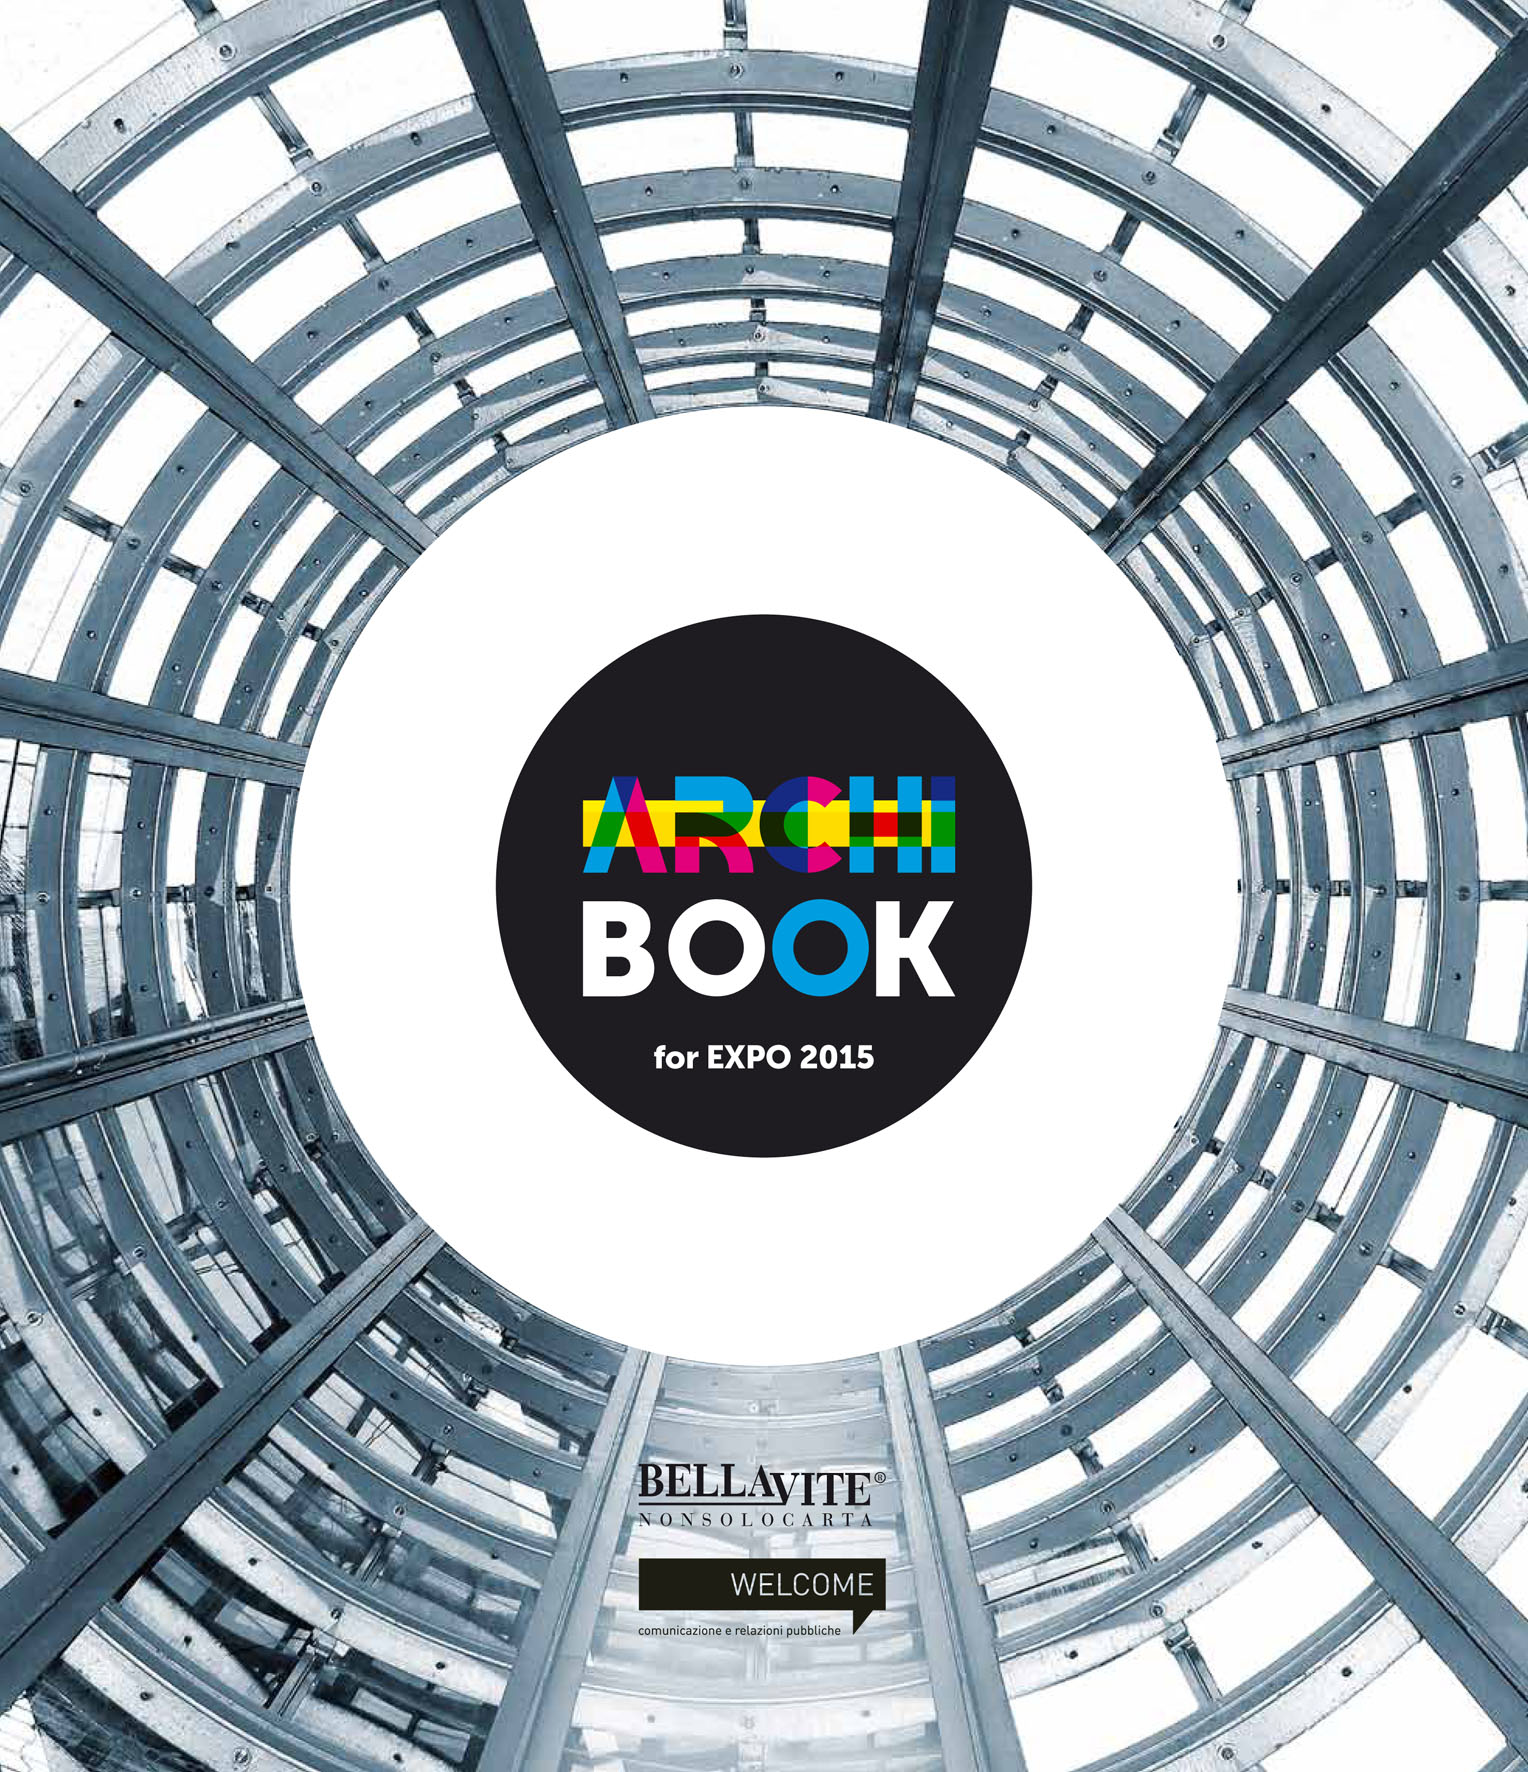 Presentato ArchiBook EXPO 2015, un volume sulle architetture dell’Esposizione Universale